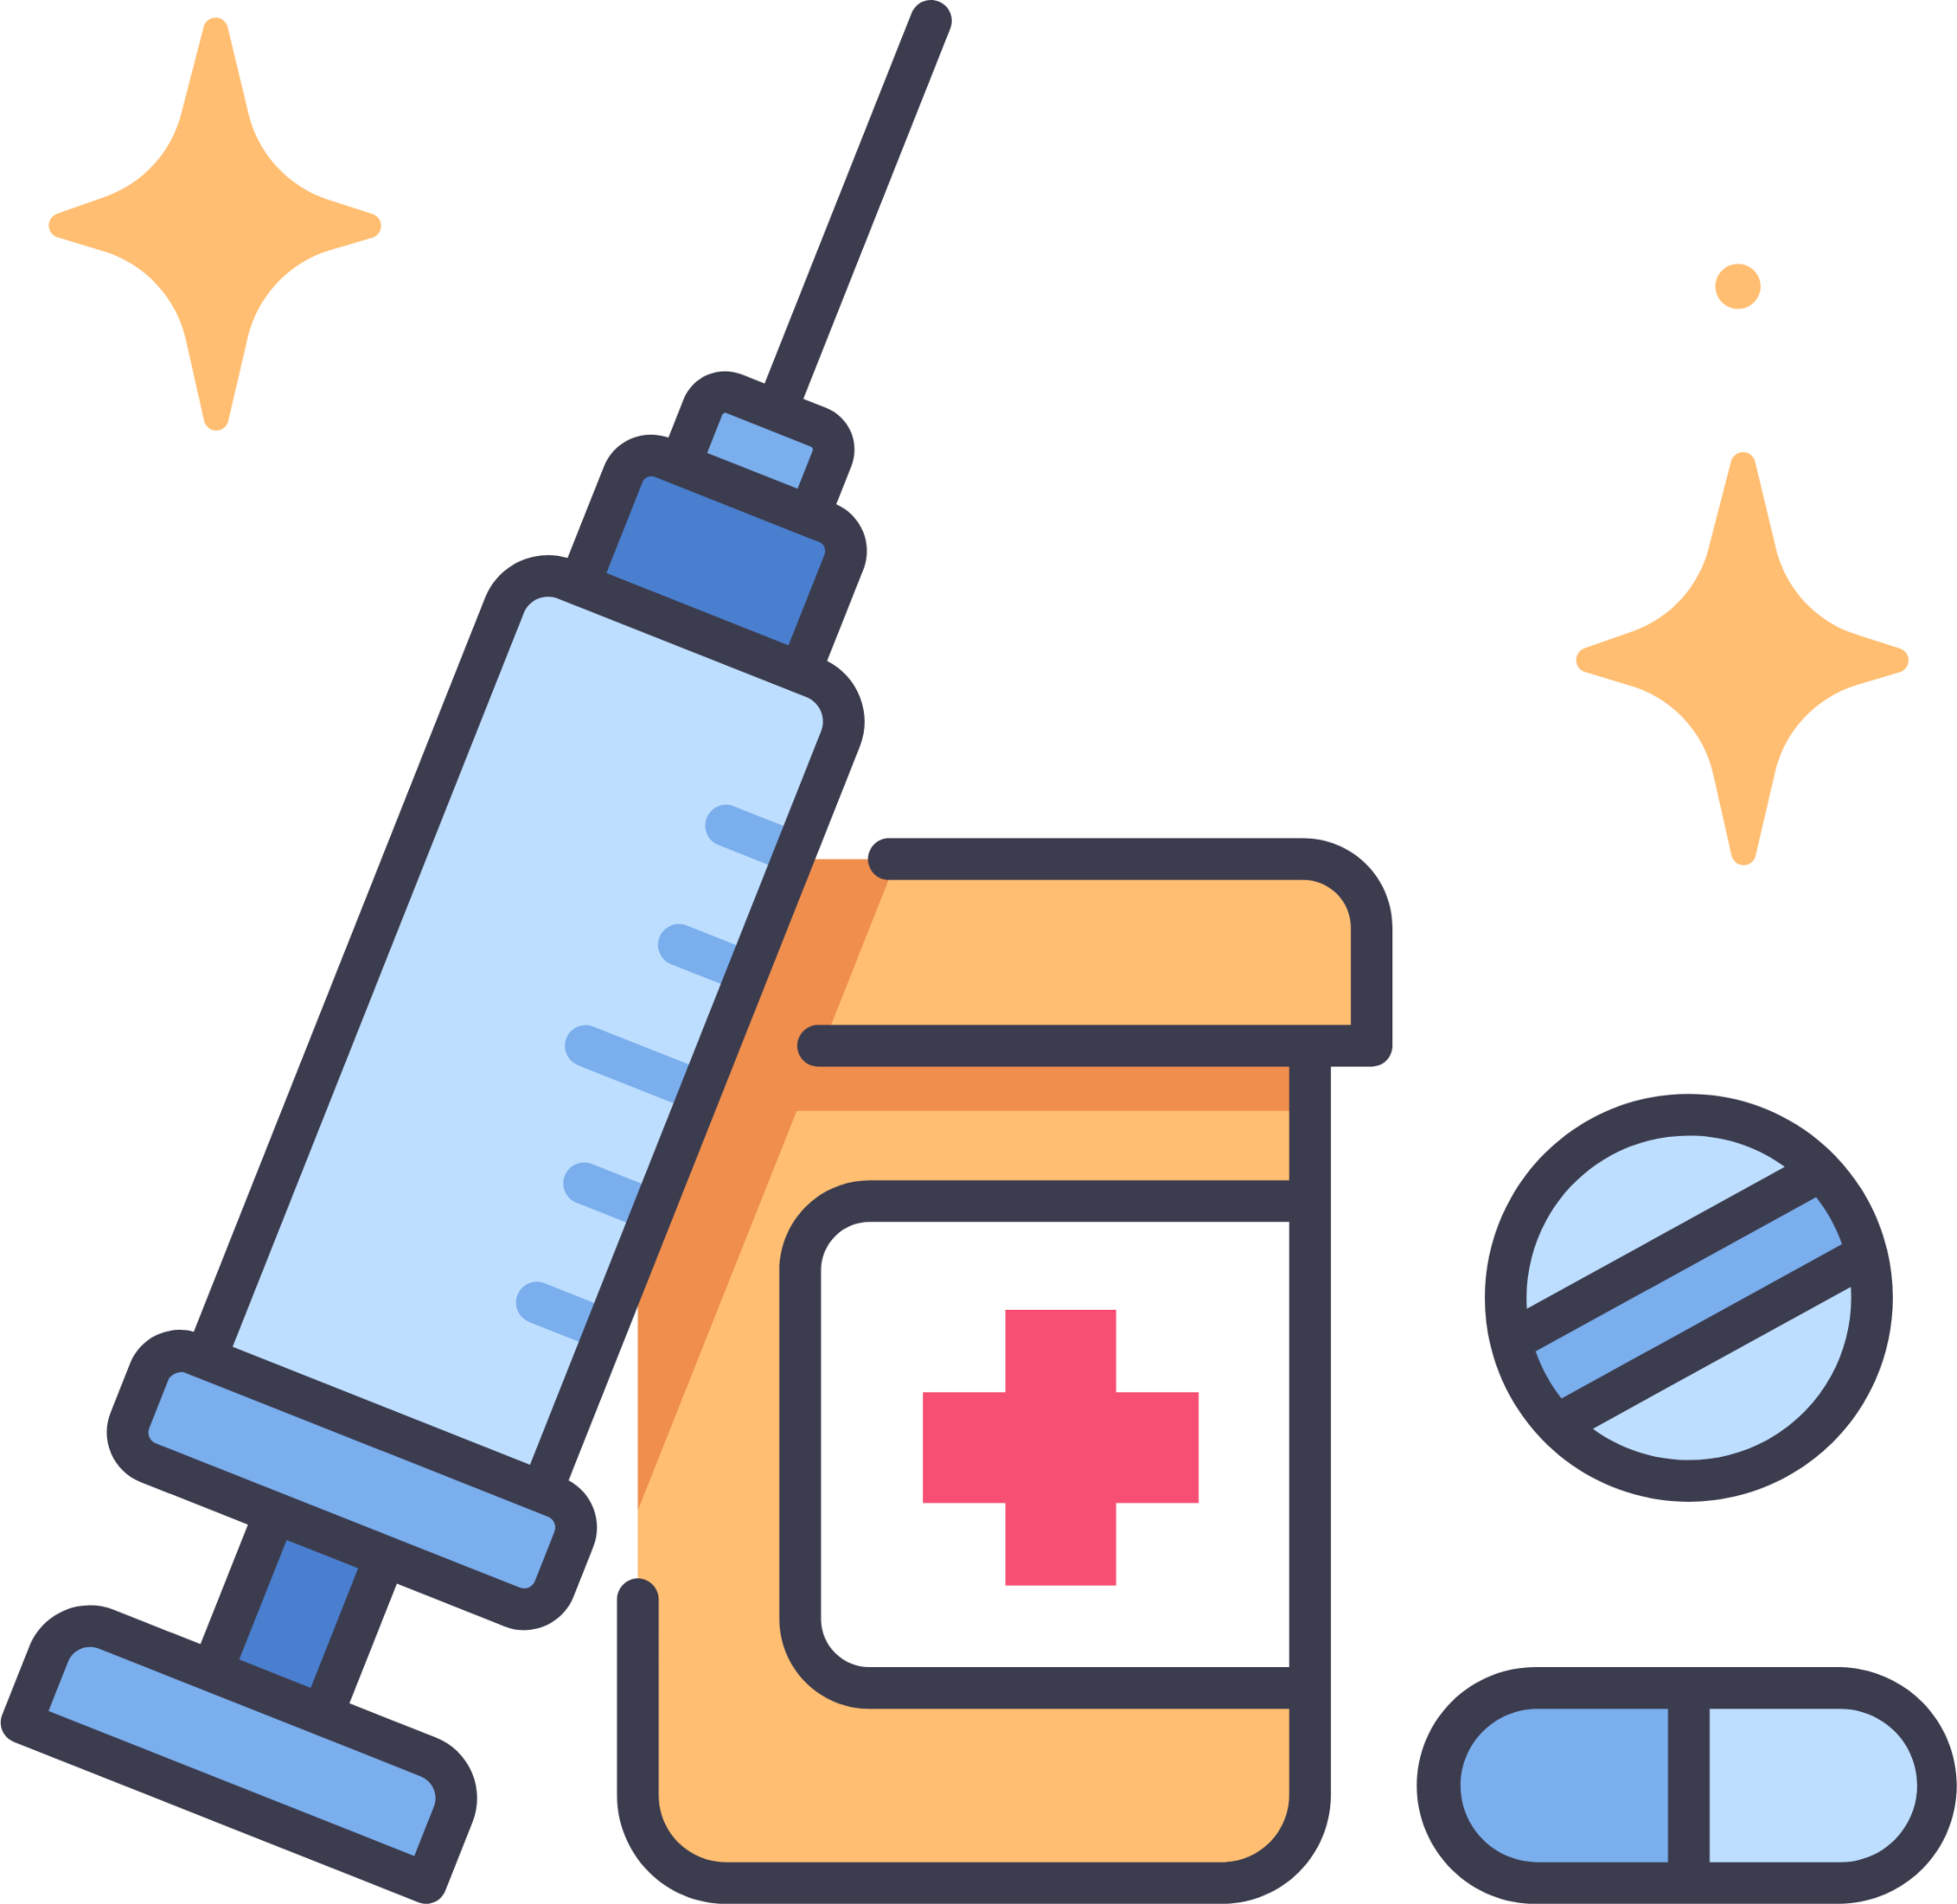 drug and syringe icon